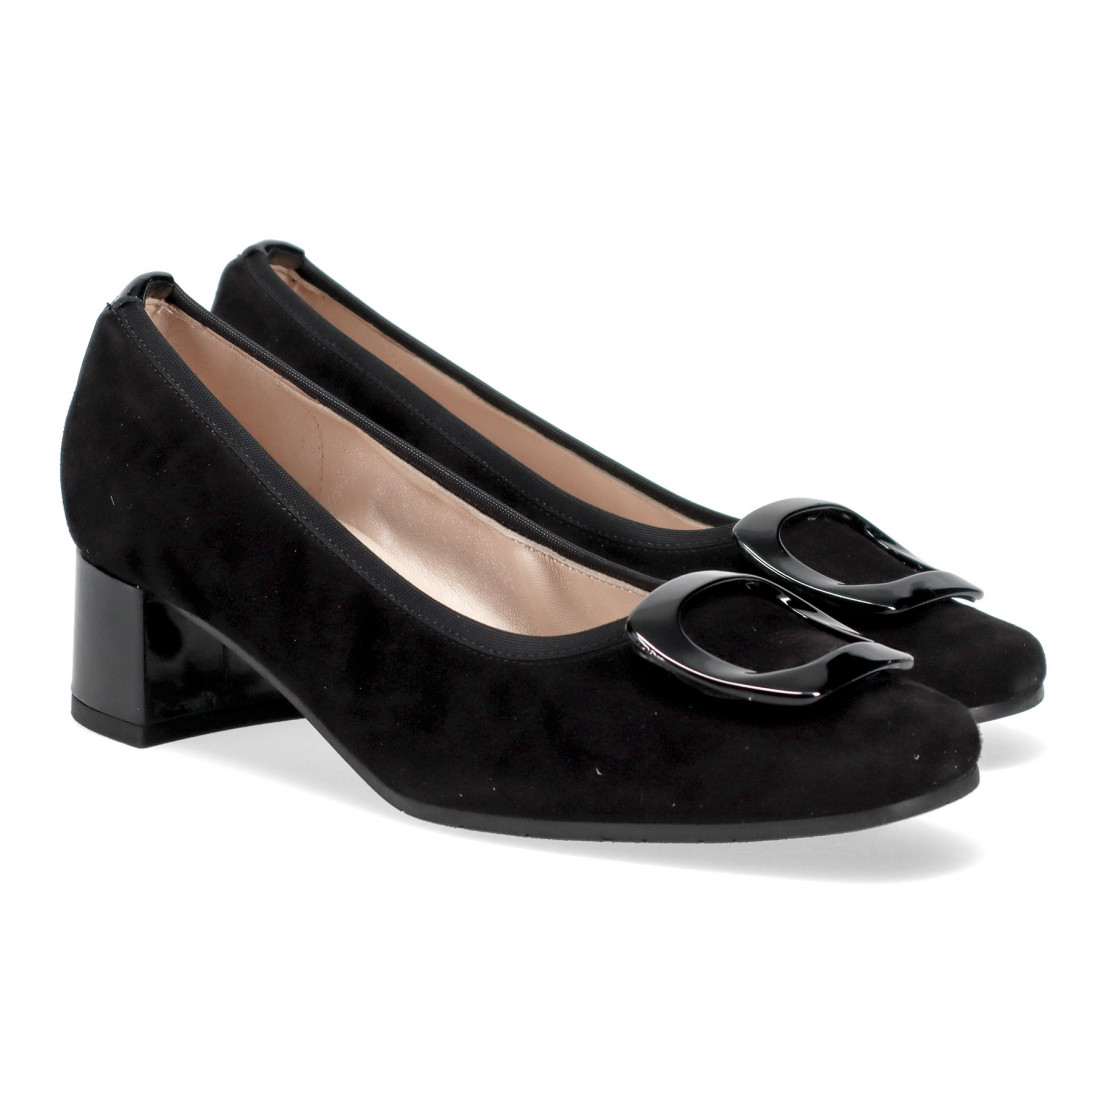 Sangiorgio black suede pump with comfortable heel